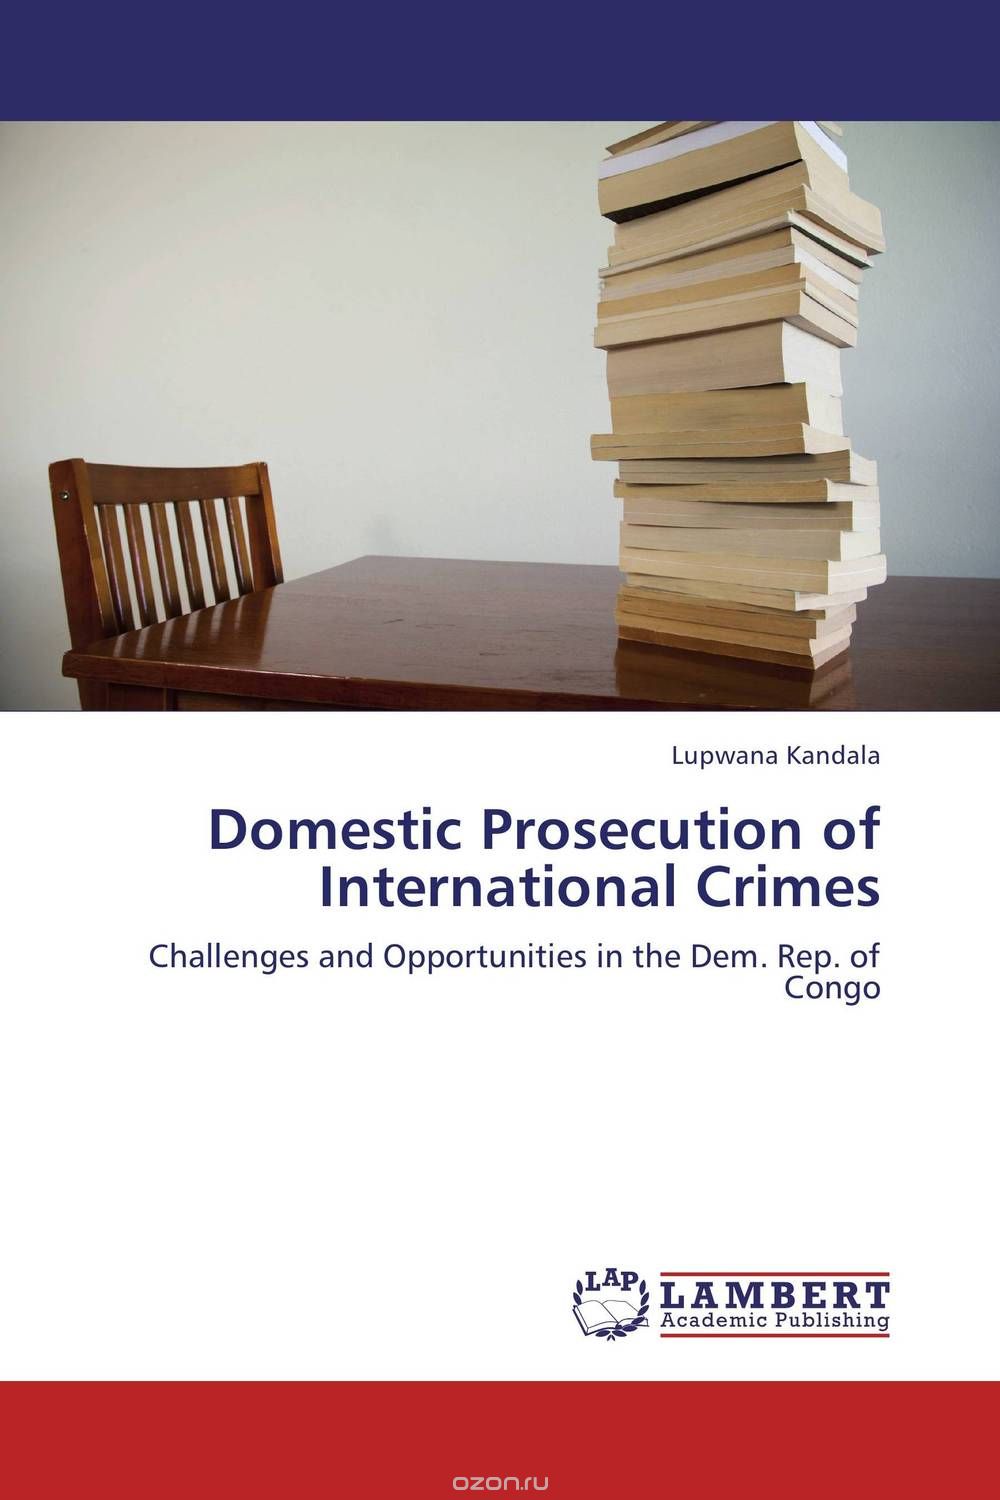 Скачать книгу "Domestic Prosecution of International Crimes"